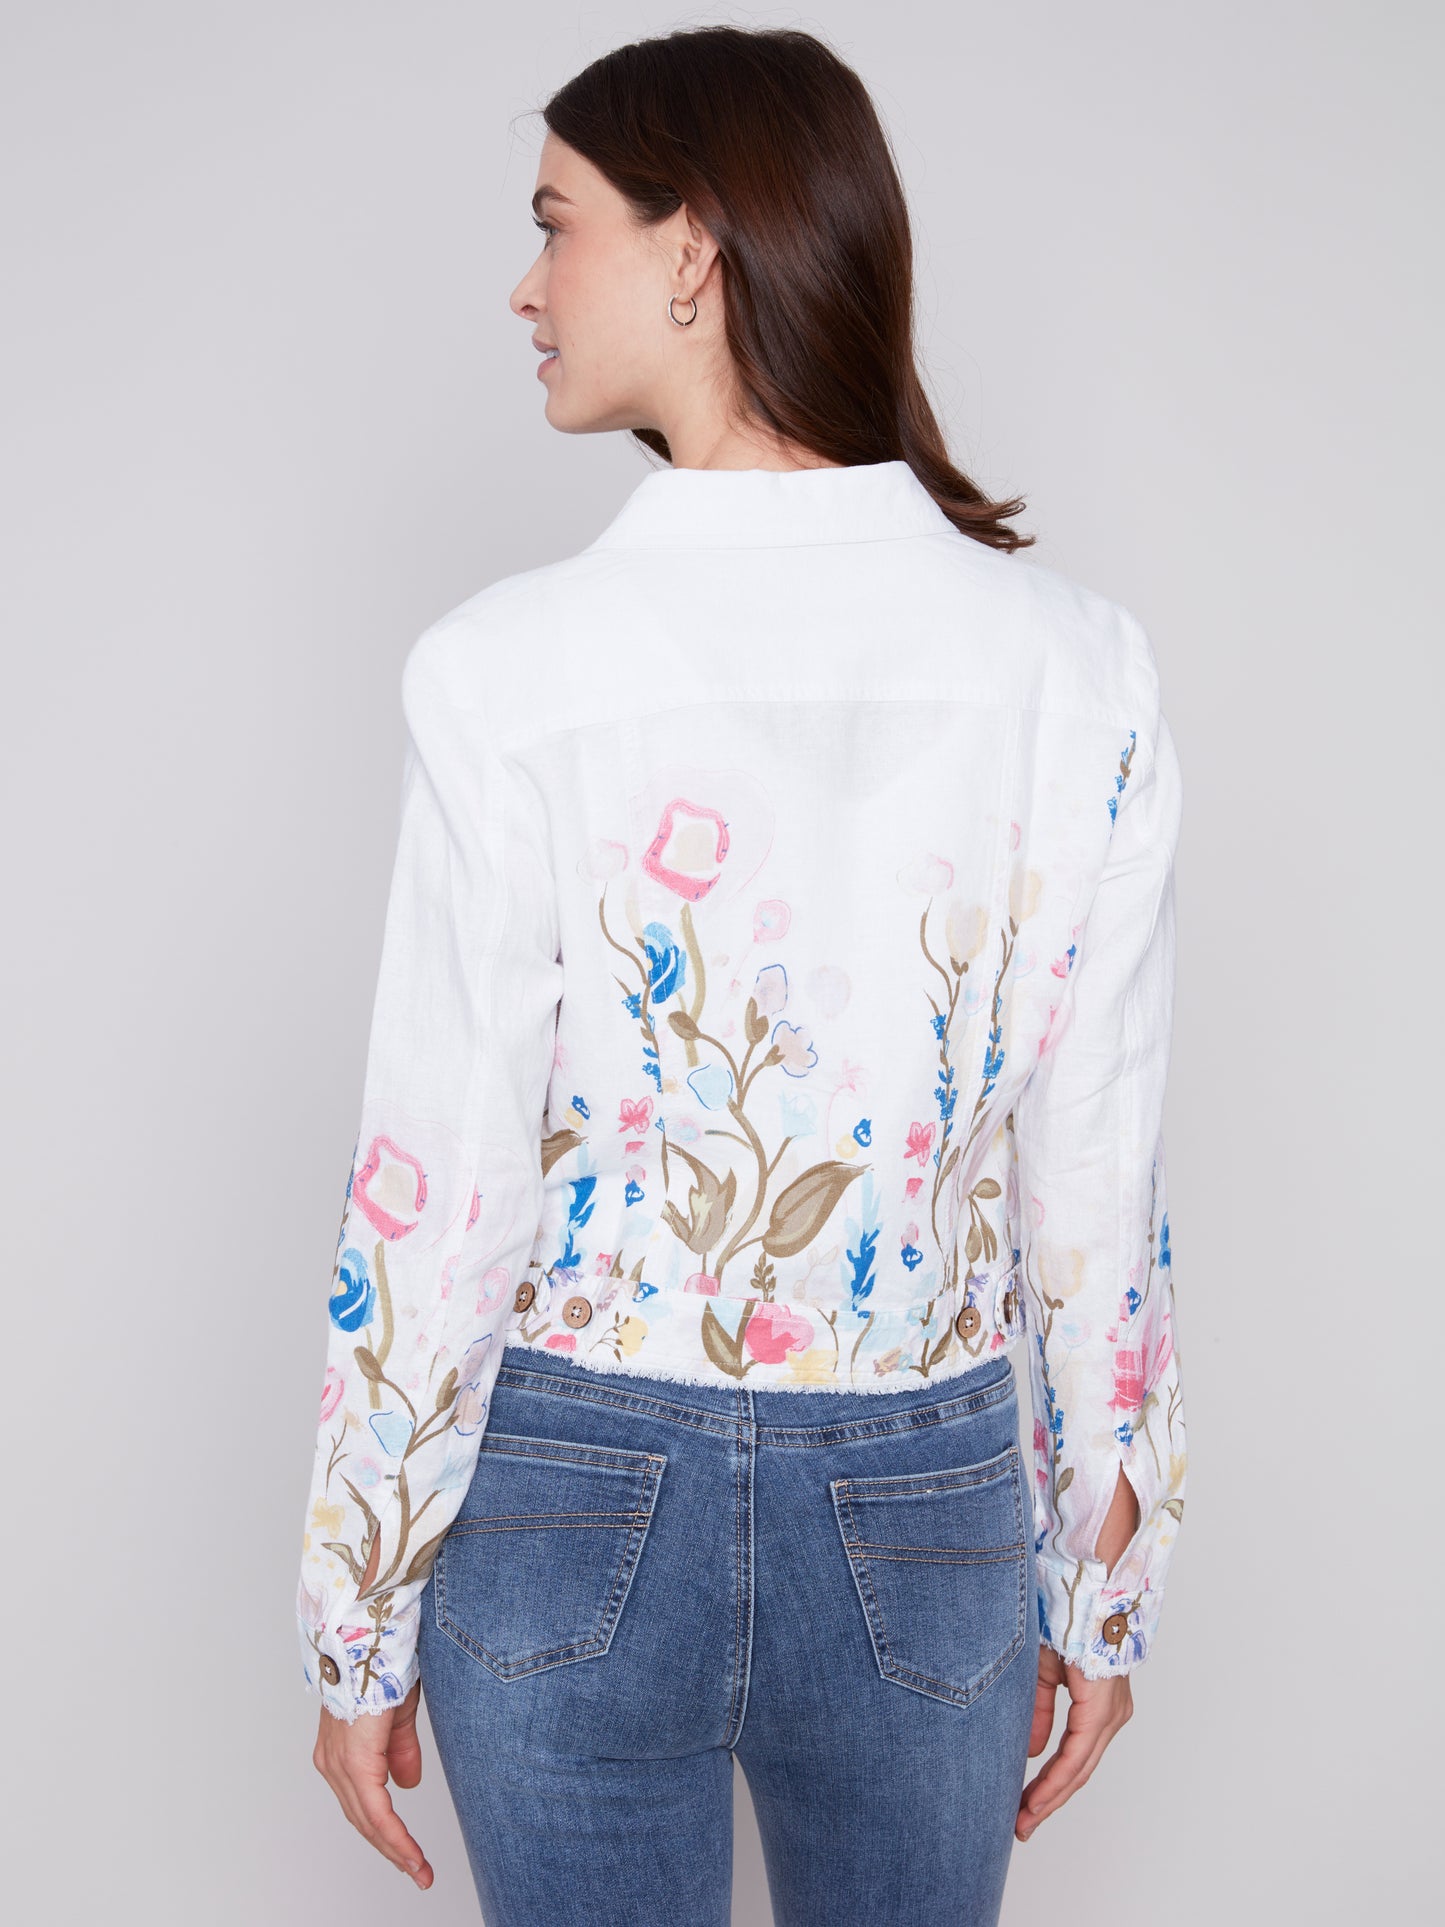 Printed Floral Jacket